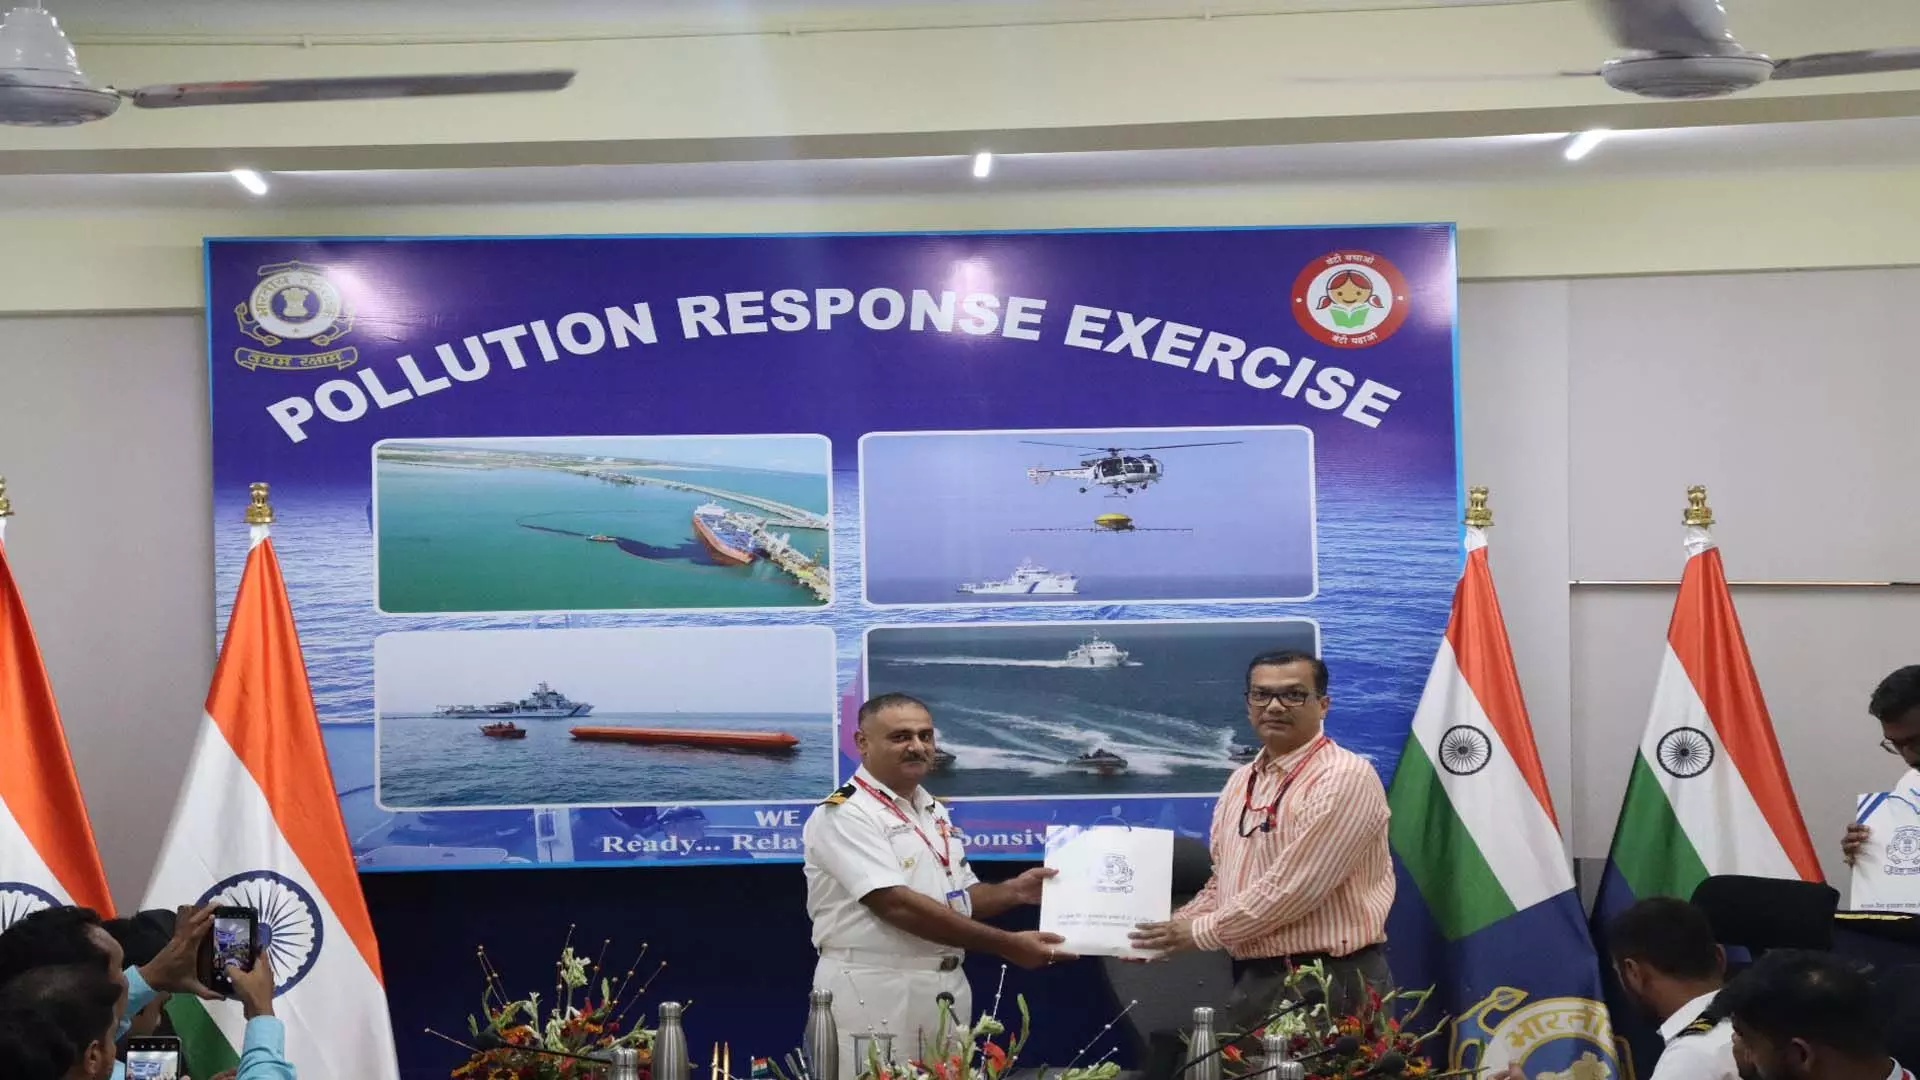 भारतीय बल ने समुद्र में oil रिसाव , चुनौतियों से निपटने के लिए बंगाल में प्रदूषण प्रतिक्रिया सेमिनार का किया आयोजन